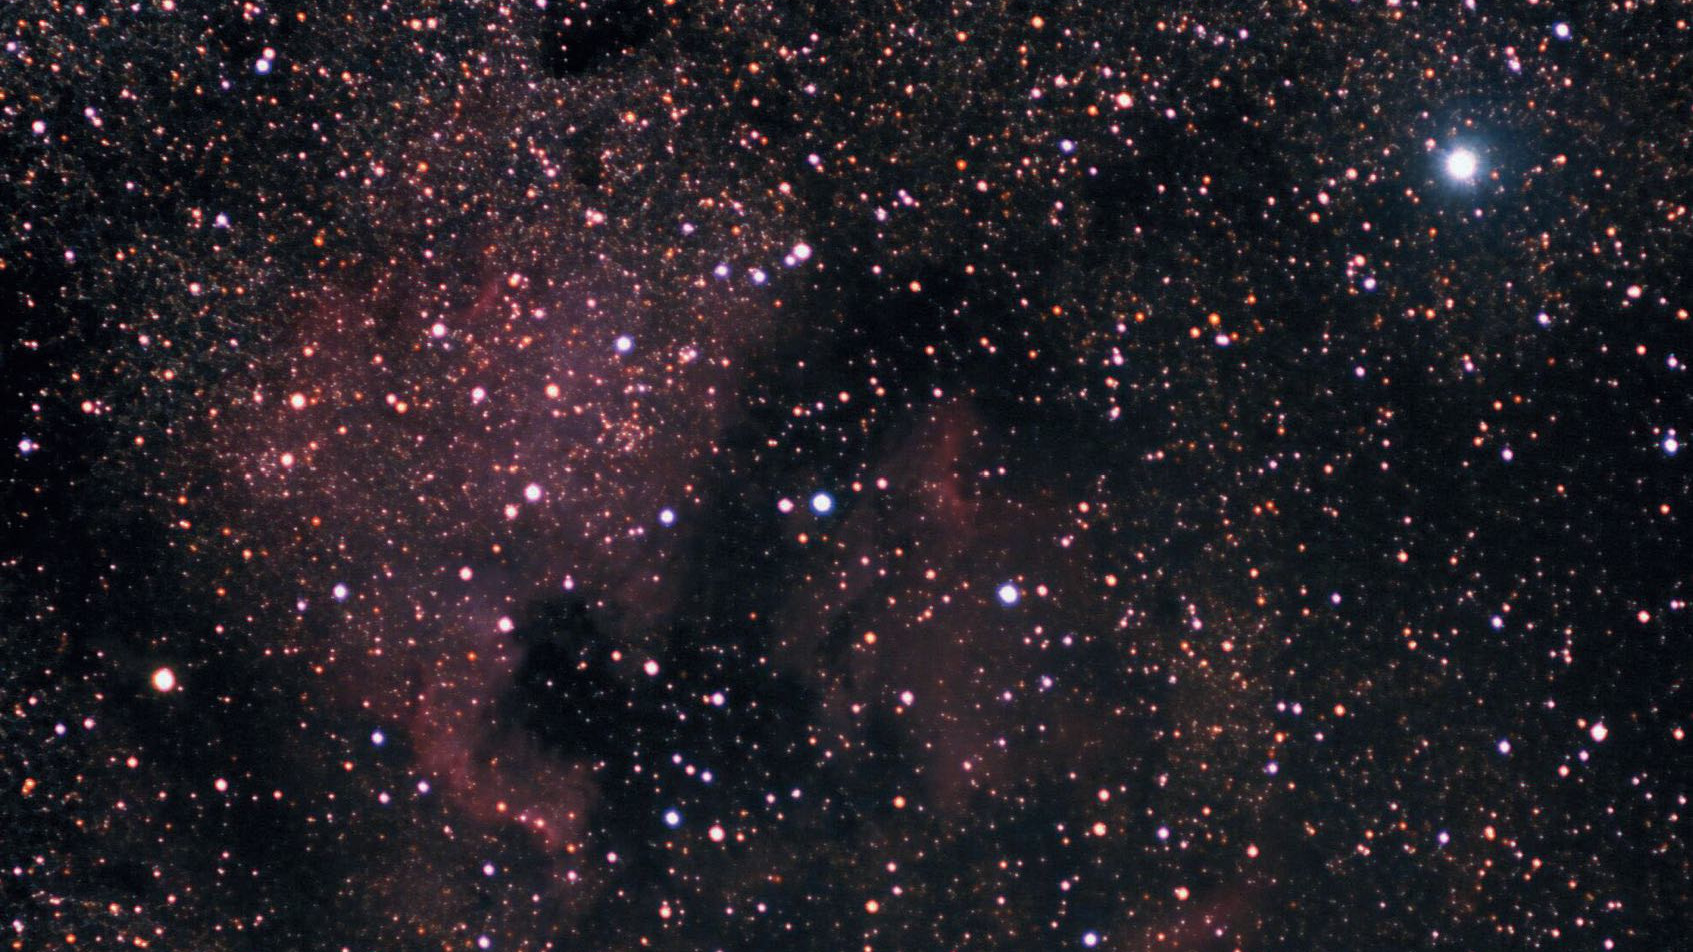 No sudeste de Deneb (estrela brilhante no topo direito) encontra-se a nebulosa norte-americana NGC 7000, uma das mais belas nebulosas gasosa. O Pequeno Oríon pode ser visto à esquerda do centro da imagem ou a leste do Golfo do México. Marcus Degenkolbe 